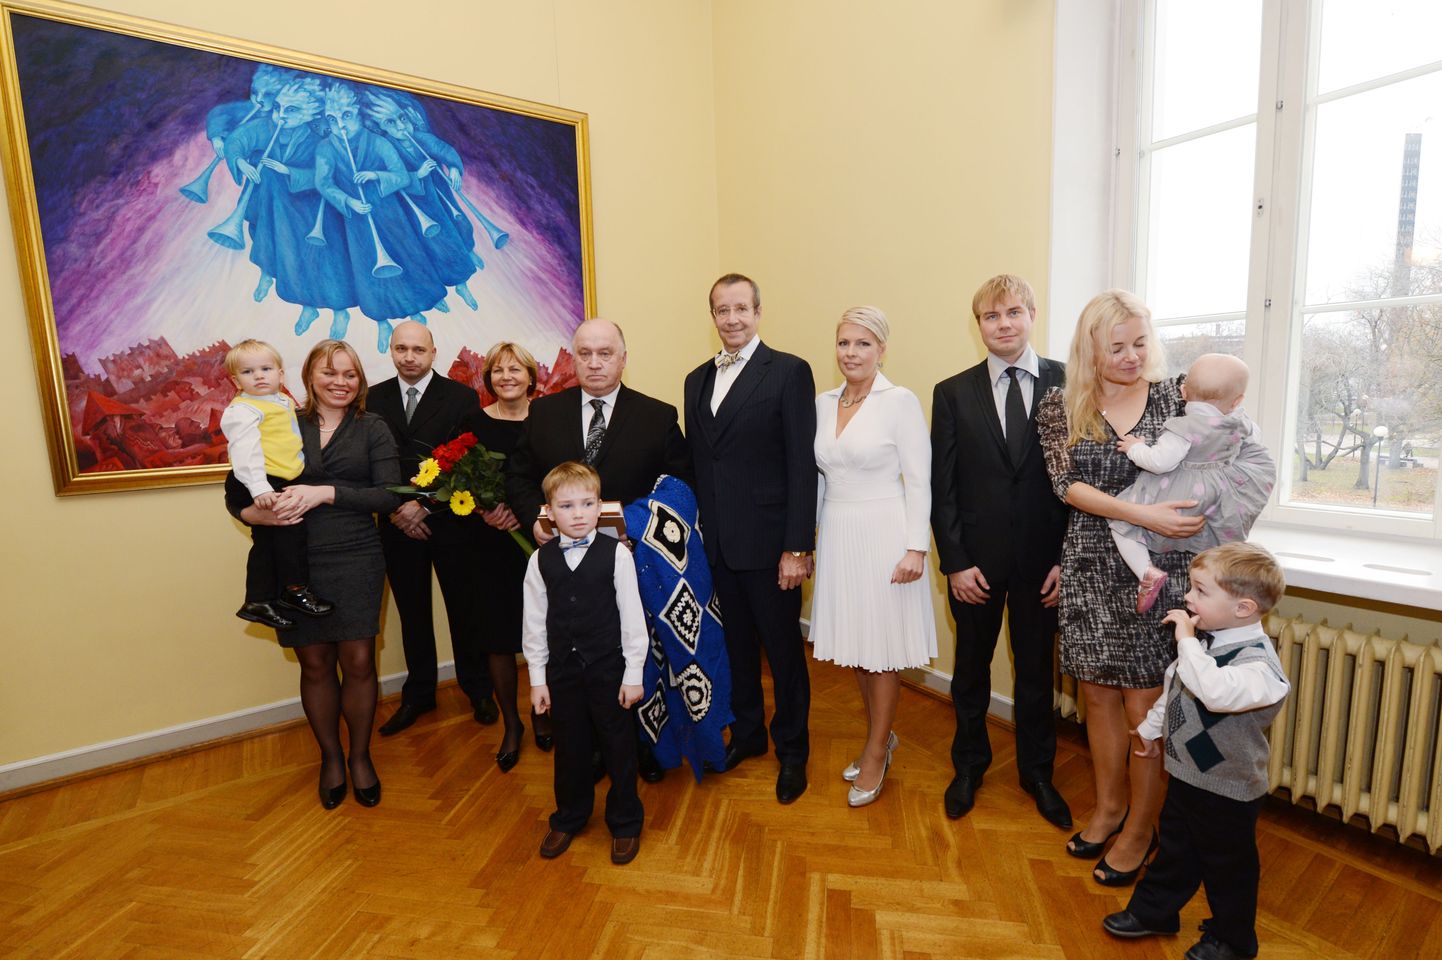 Aasta isa koos pere ja presidendiga. Kristiina Ojamaa on vasakul lapsega.